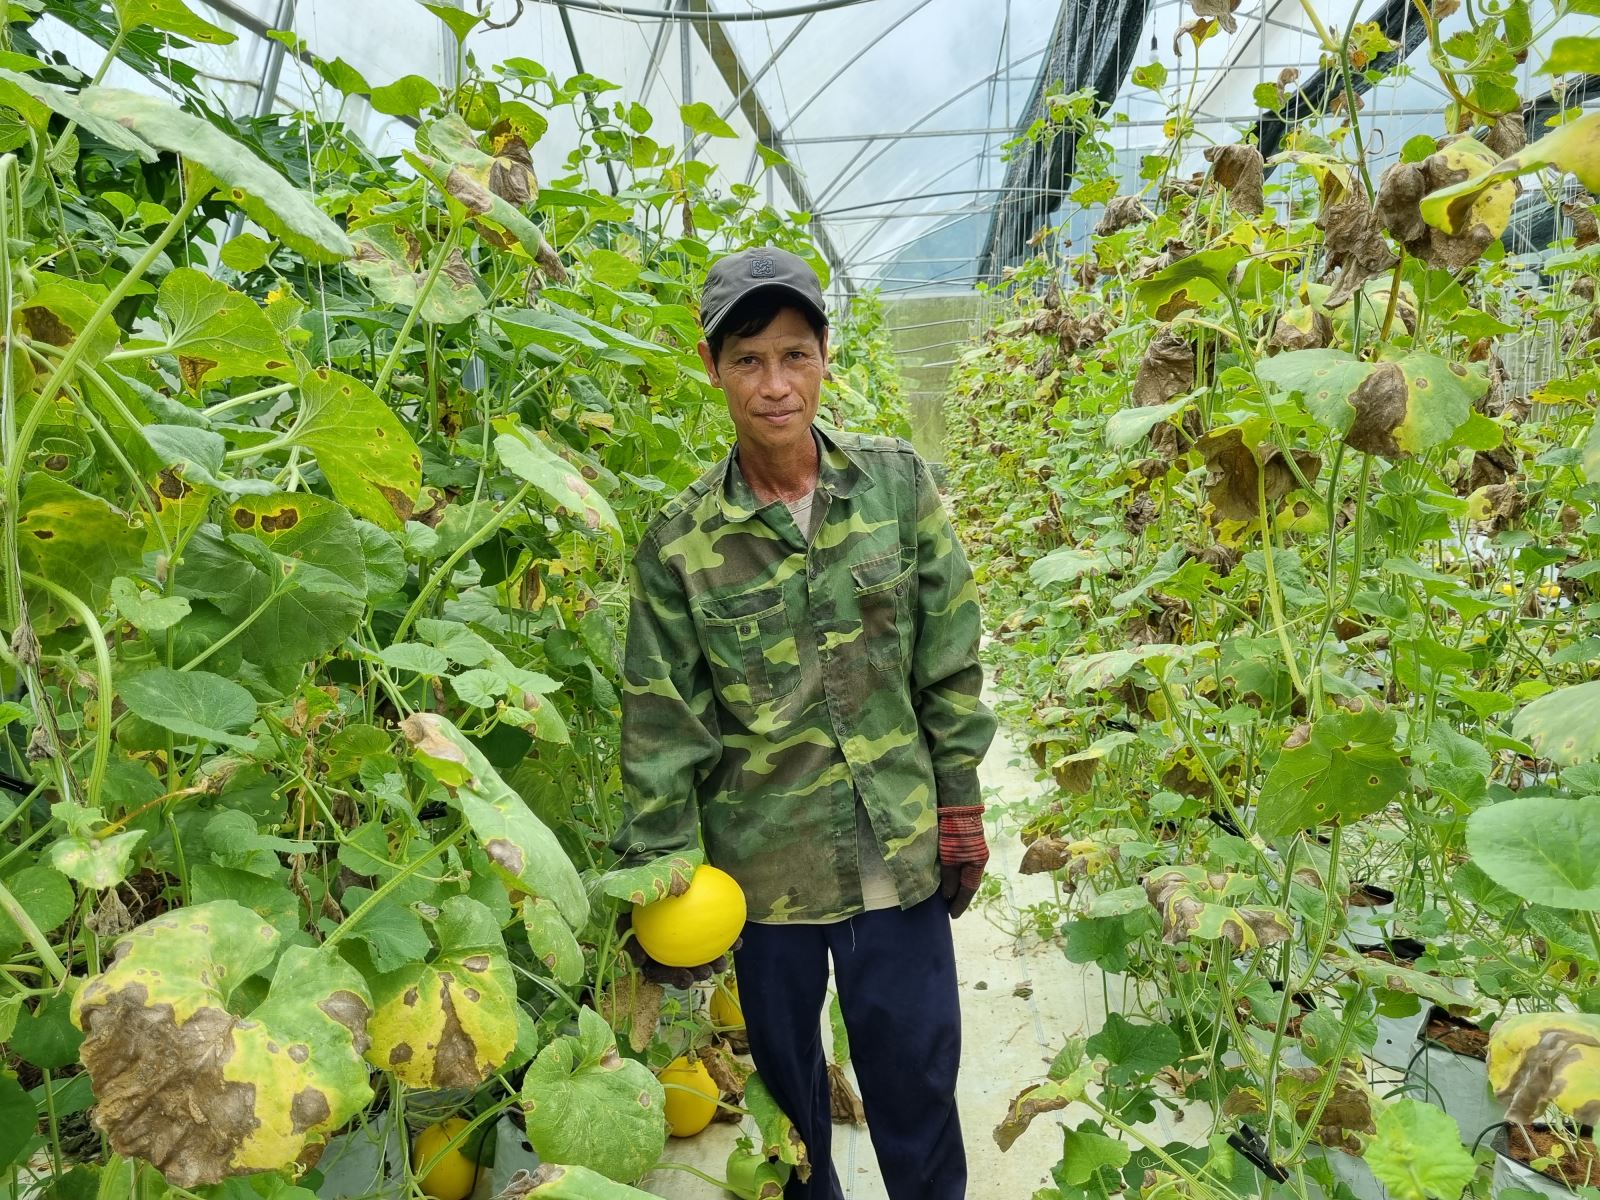 Mô hình trồng dưa lê trong nhà màng ứng dụng công nghệ cao của gia đình ông Lê Lơi ở xã Hương Xuân, huyện Nam Đông mang lại hiệu quả kinh tế cao. Ảnh: T. Thành